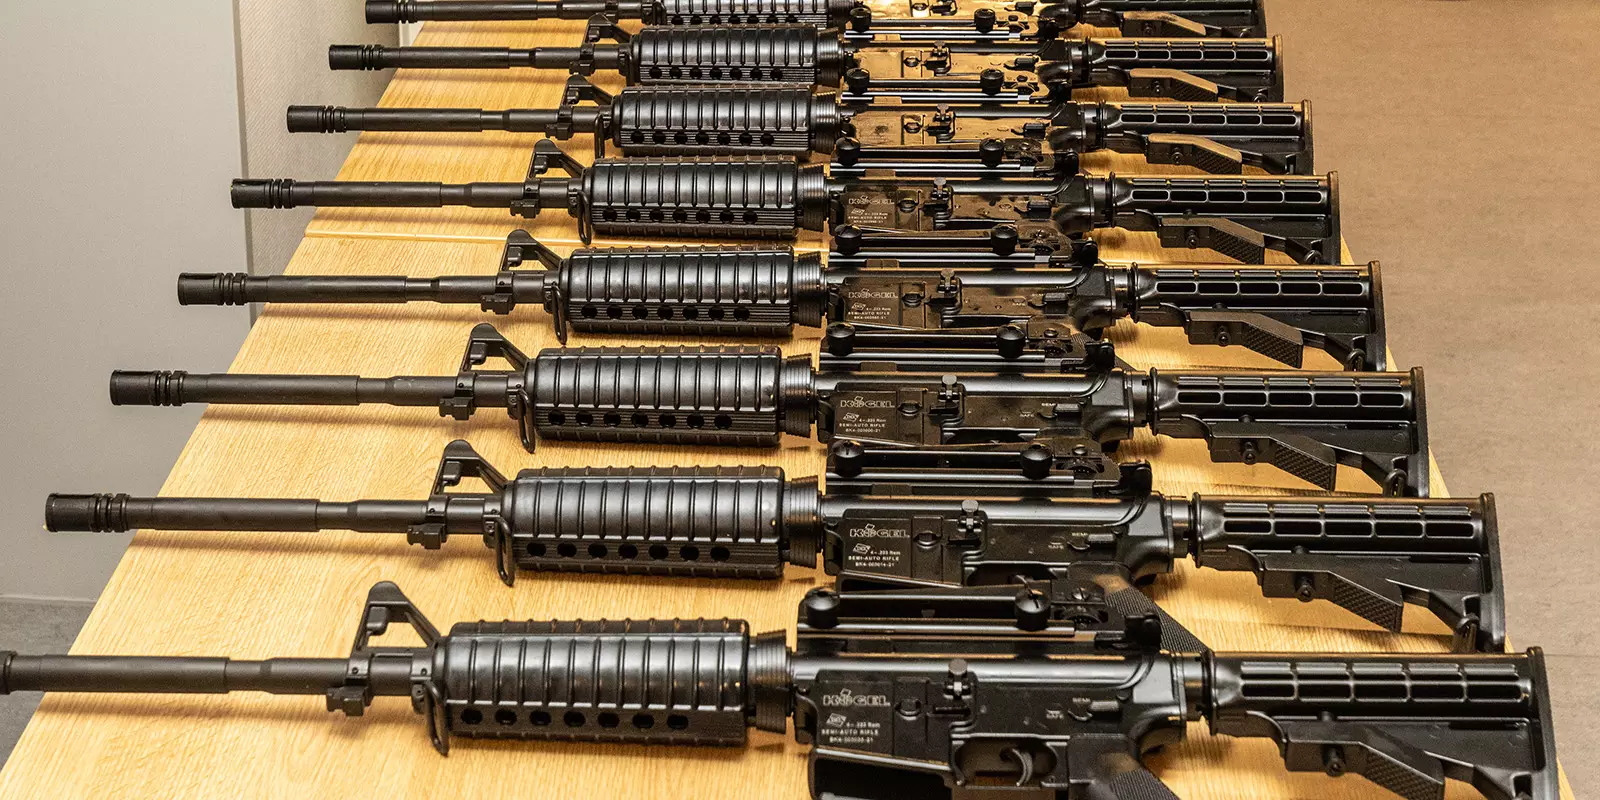 Einige der sichergestellten Waffen. Foto: zv